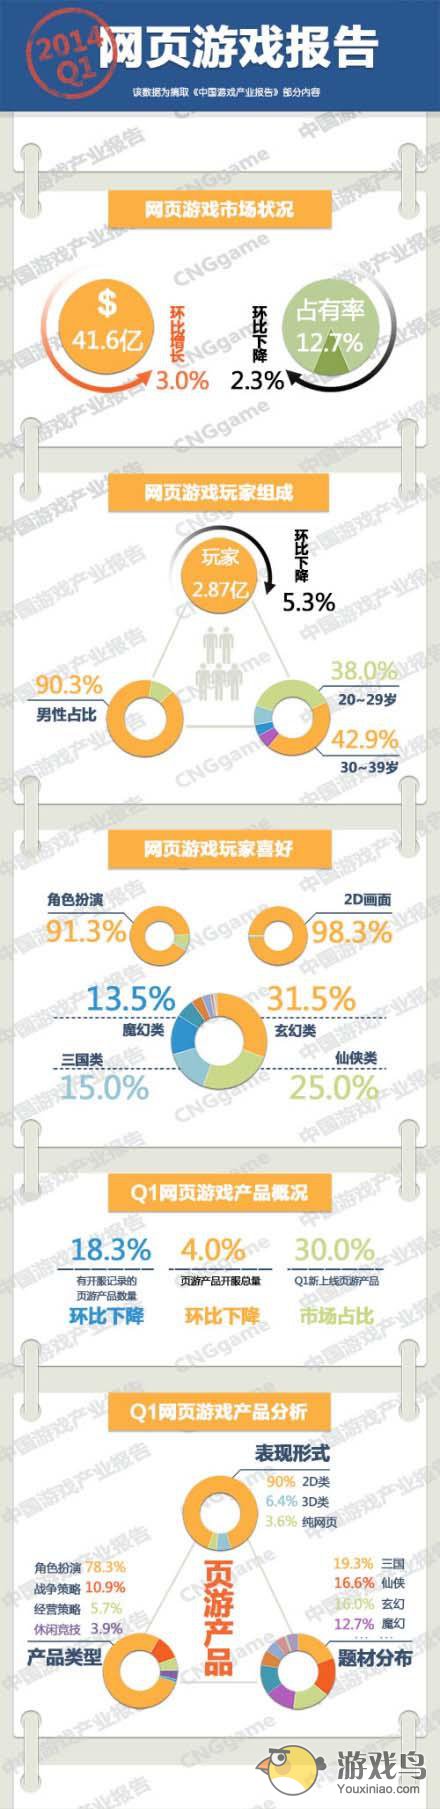 2014第一季度中国数据统计 页游玩家2.87亿[图]图片1